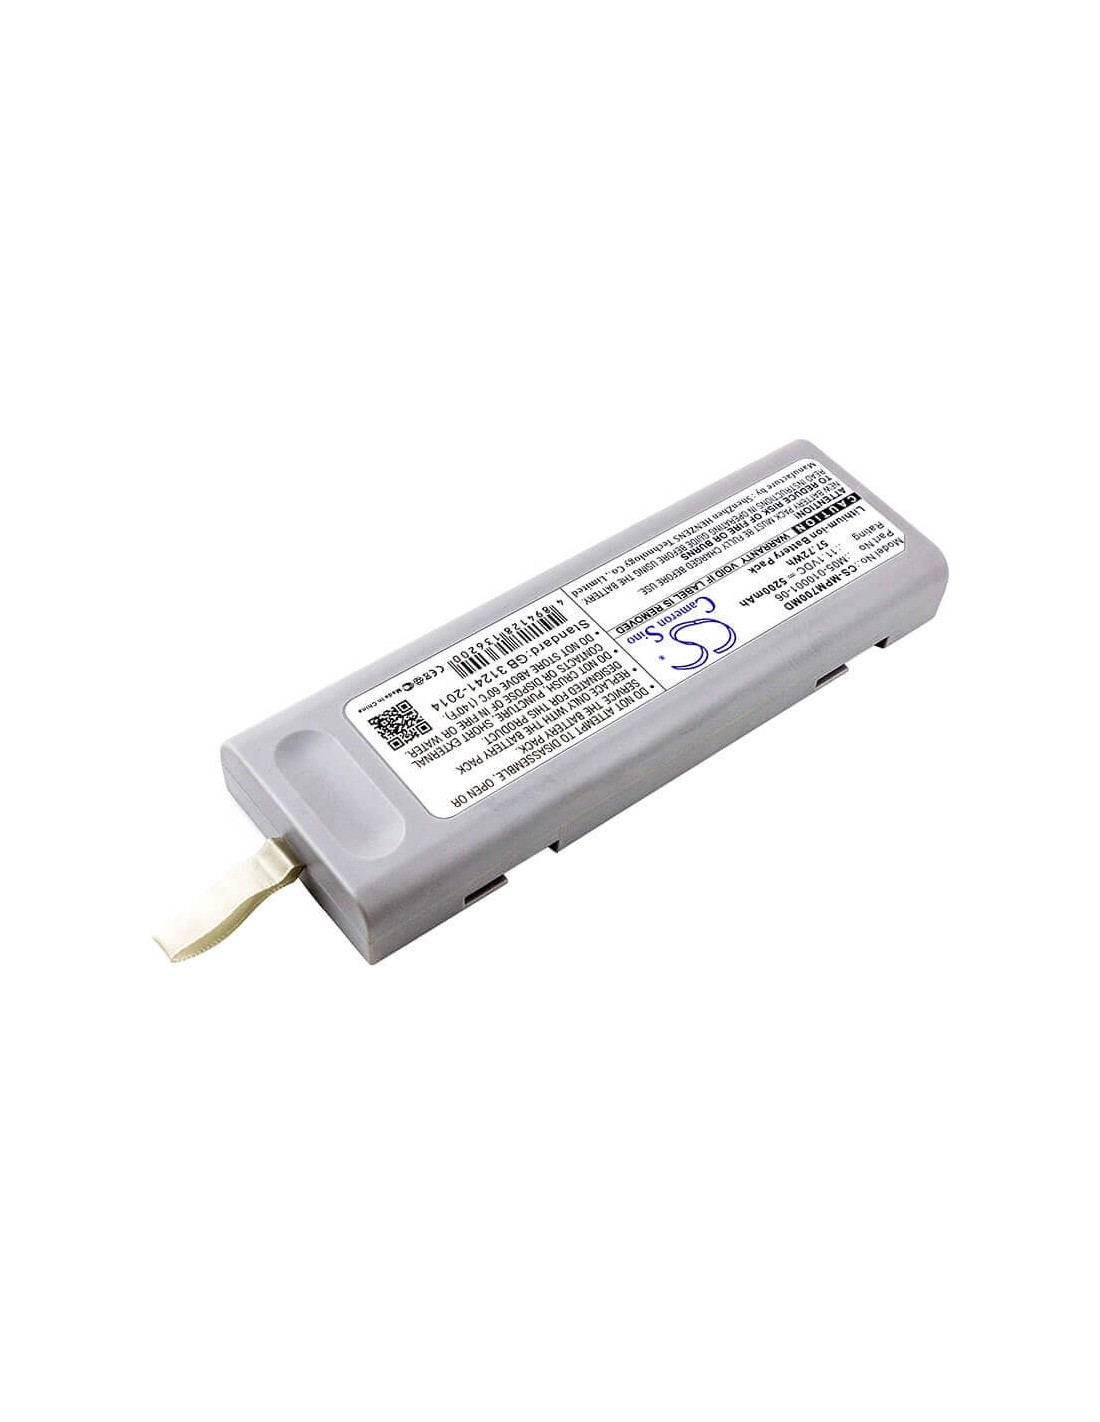 Battery for Mindray, Accutorr V, Dpm3, Dpm4 11.1V, 5200mAh - 57.72Wh